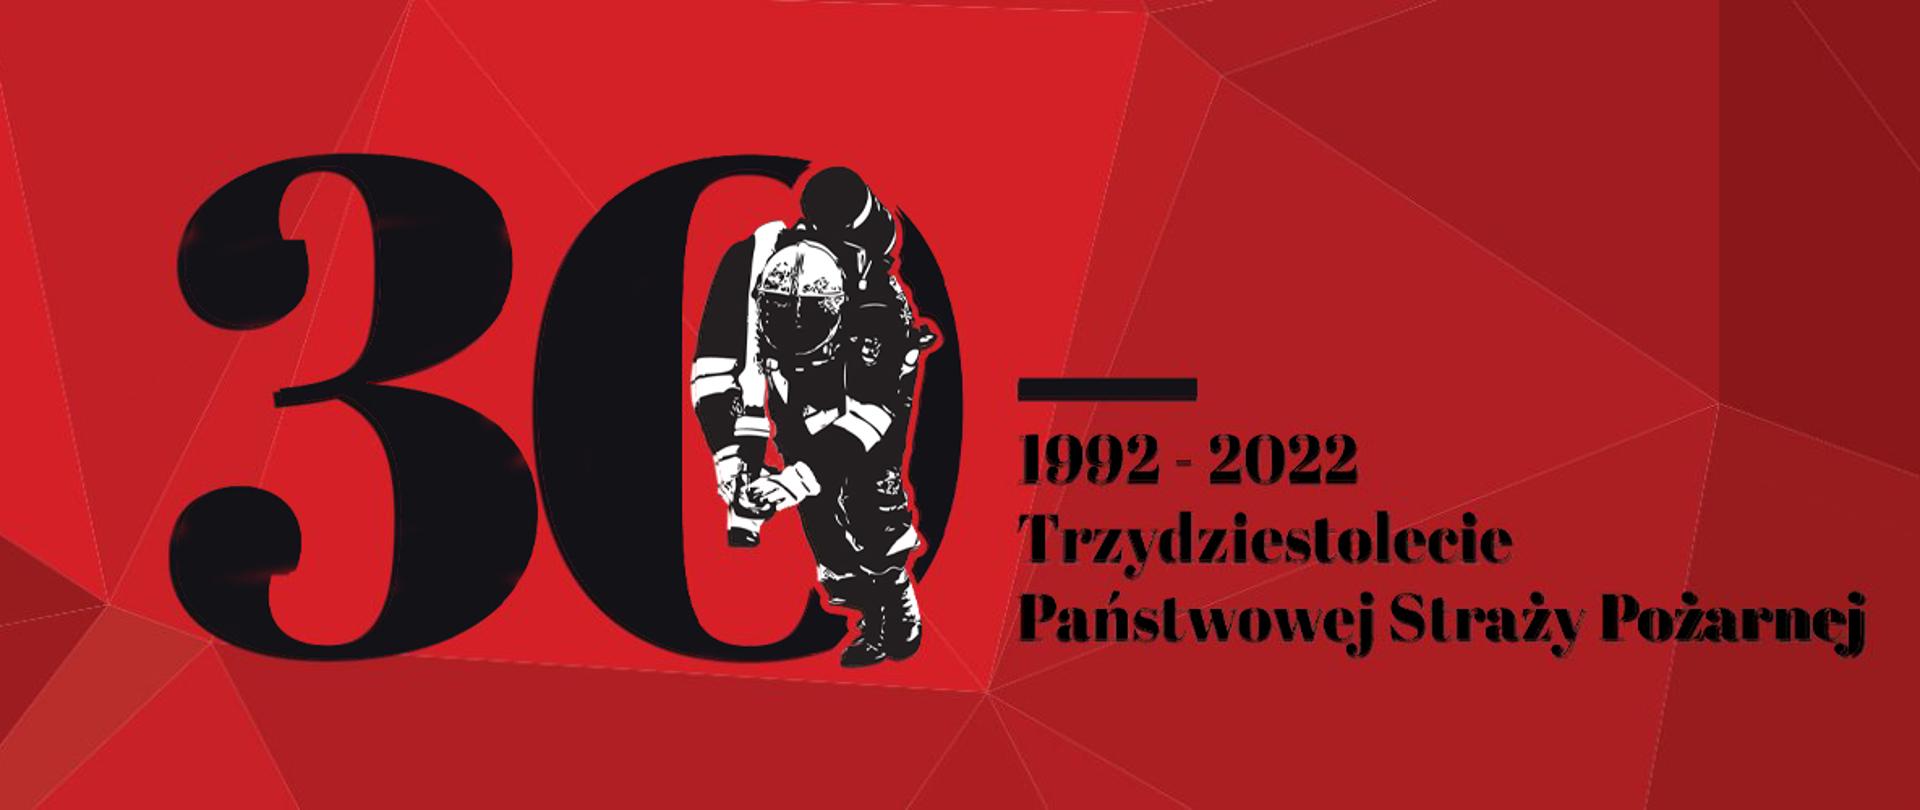 Logo PSP